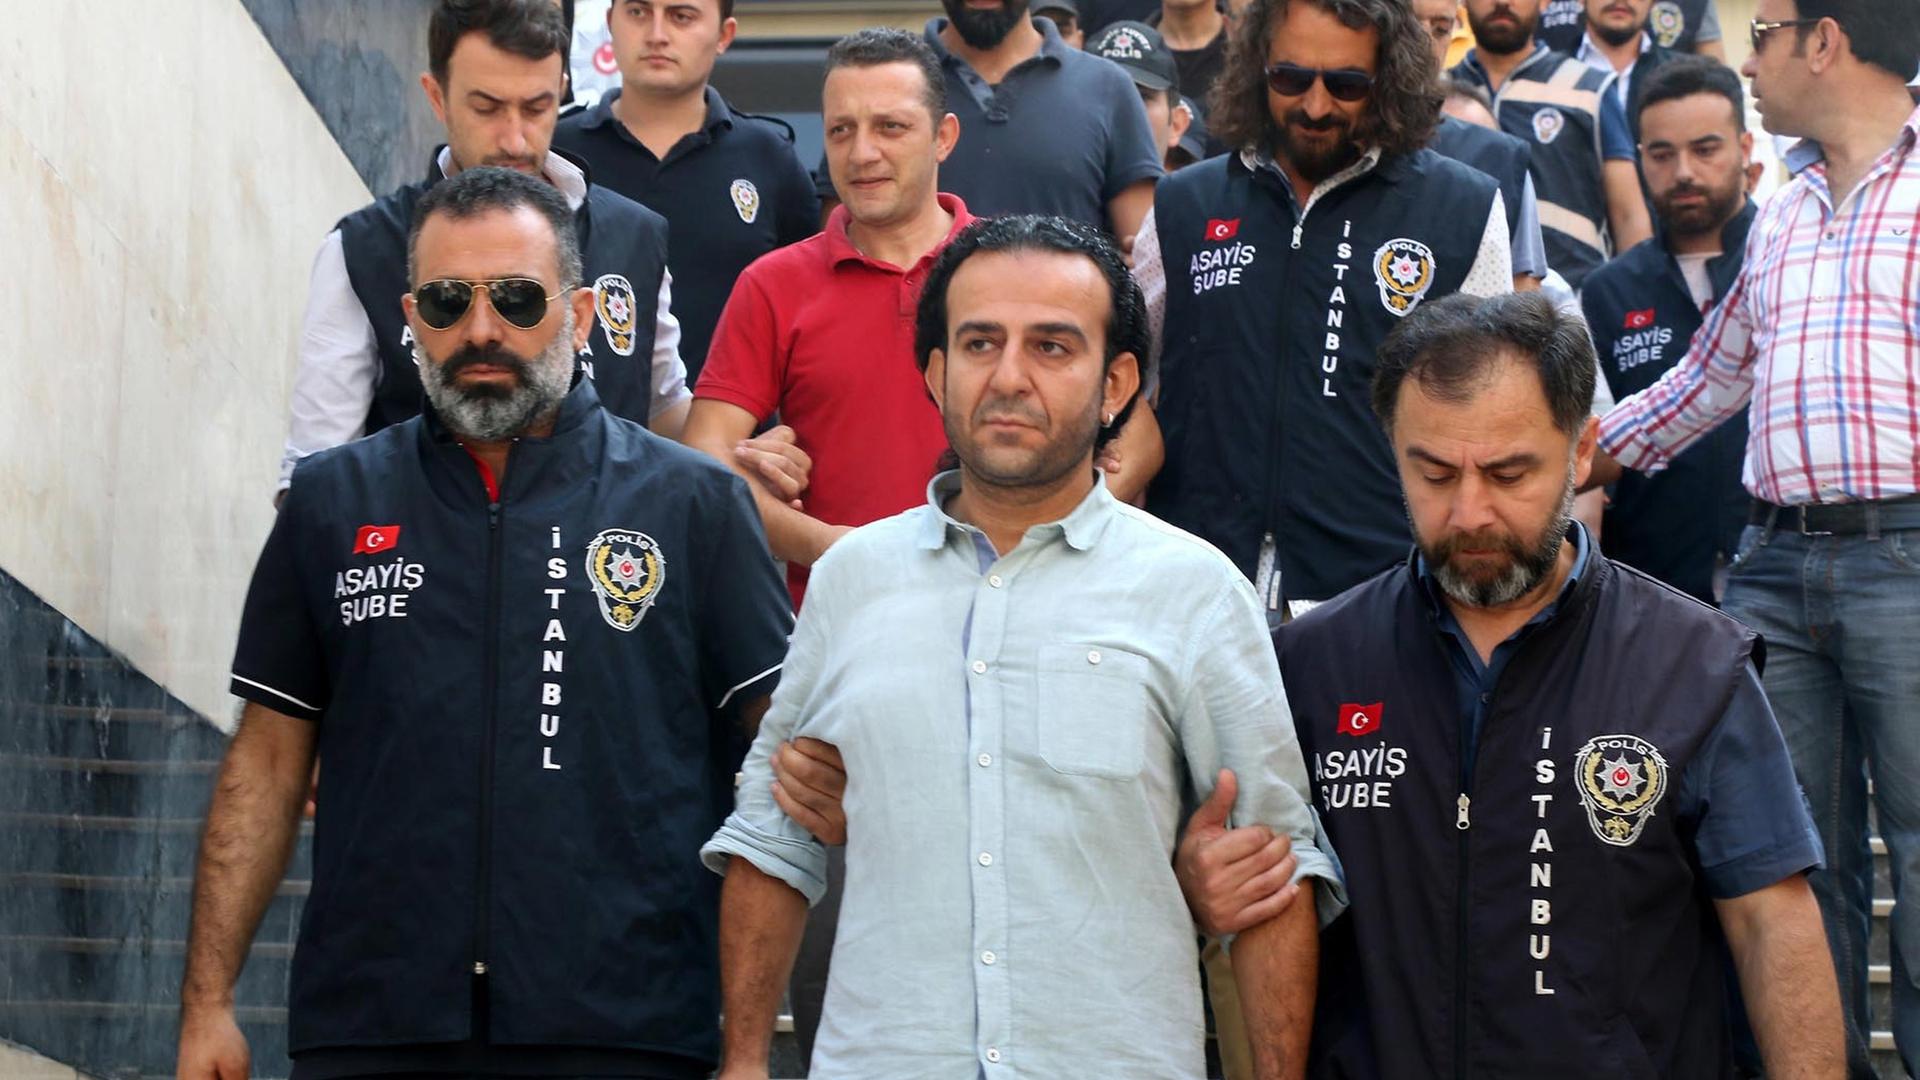 Polizisten geleiten den Journalisten Bülent Mumay zu einem Gericht in Istanbul.